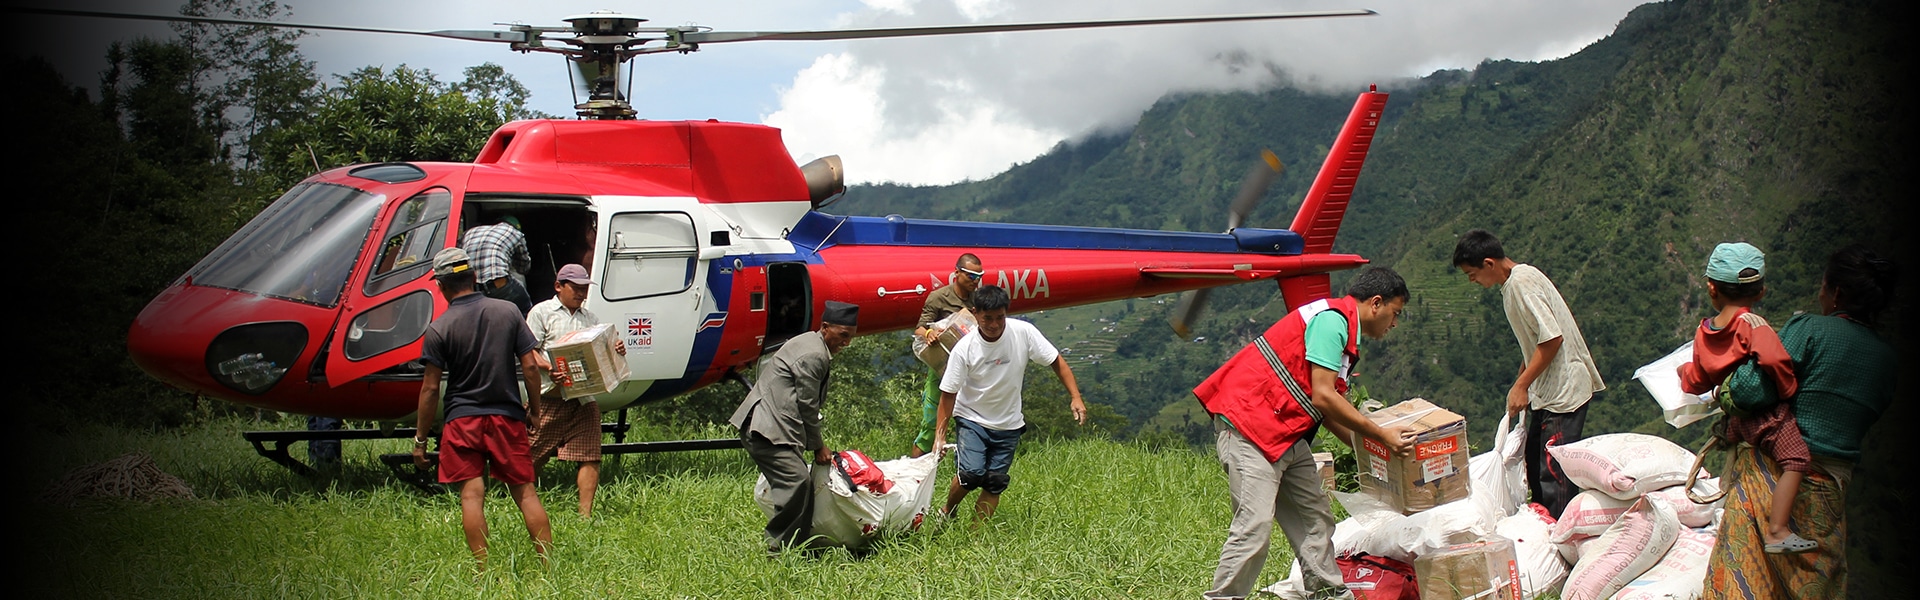 Et helikopter kommer med nødhjelp